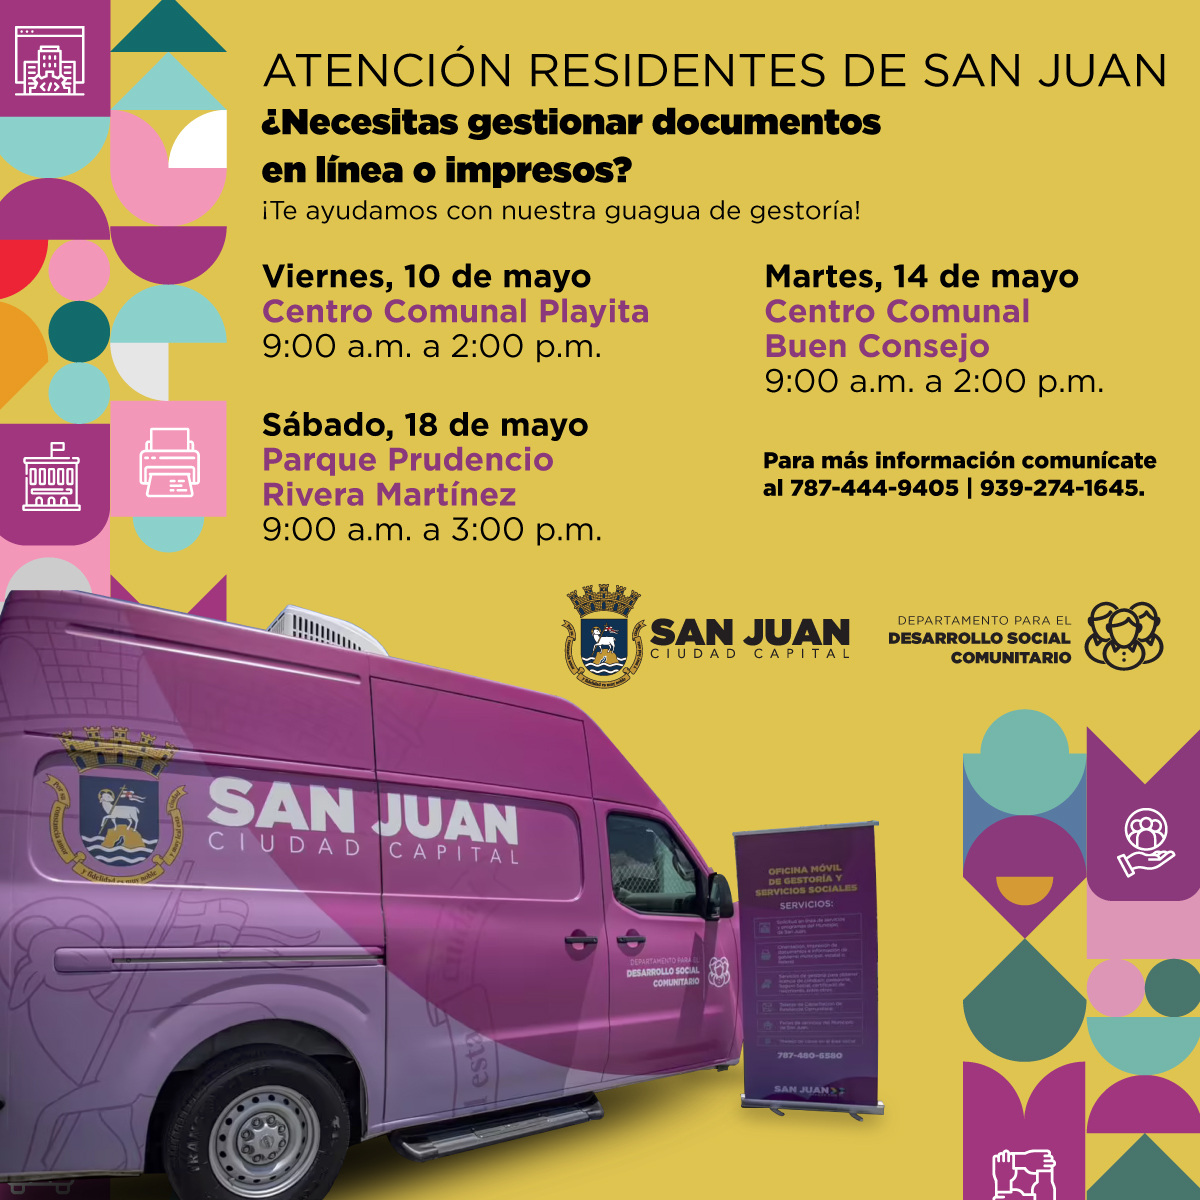 ¡Conoce dónde estará nuestra guagua de servicios este mes de mayo! #SanJuan #CiudadCapitalPR